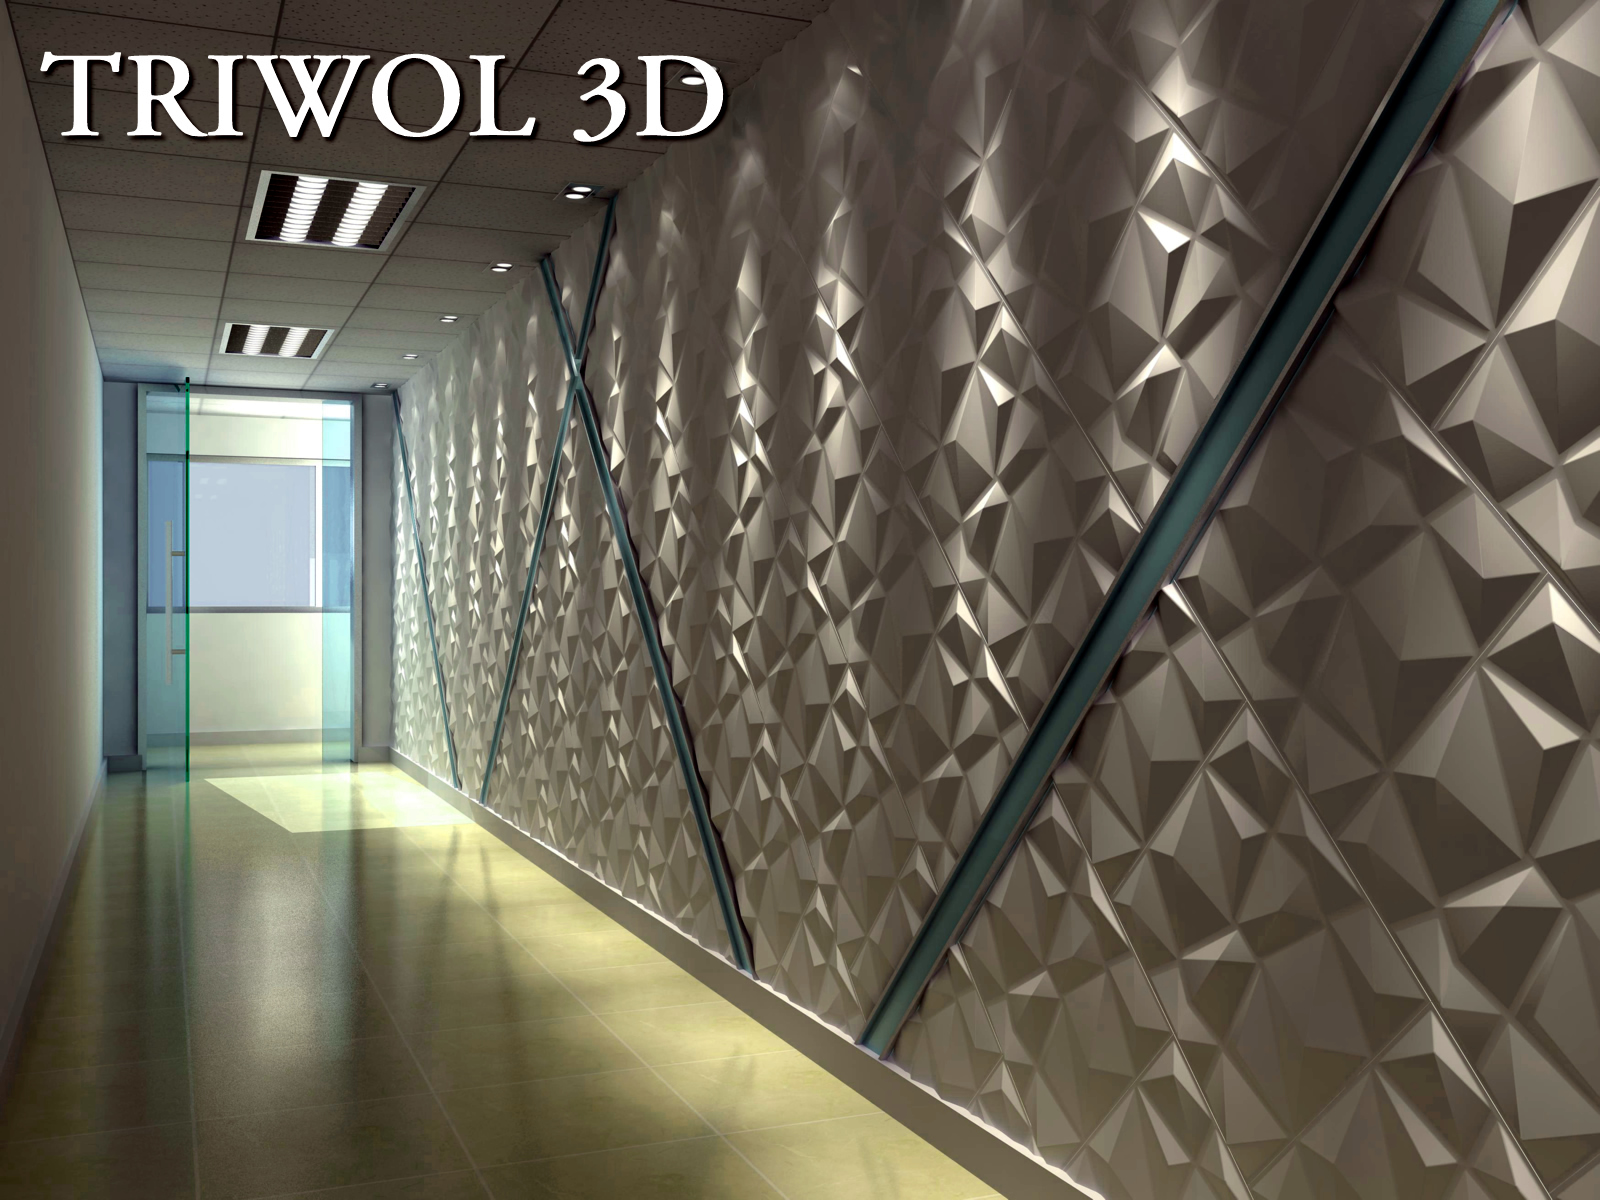 TRIWOL-3d-duvar-paneli-Model=RUBIK-50x50cm